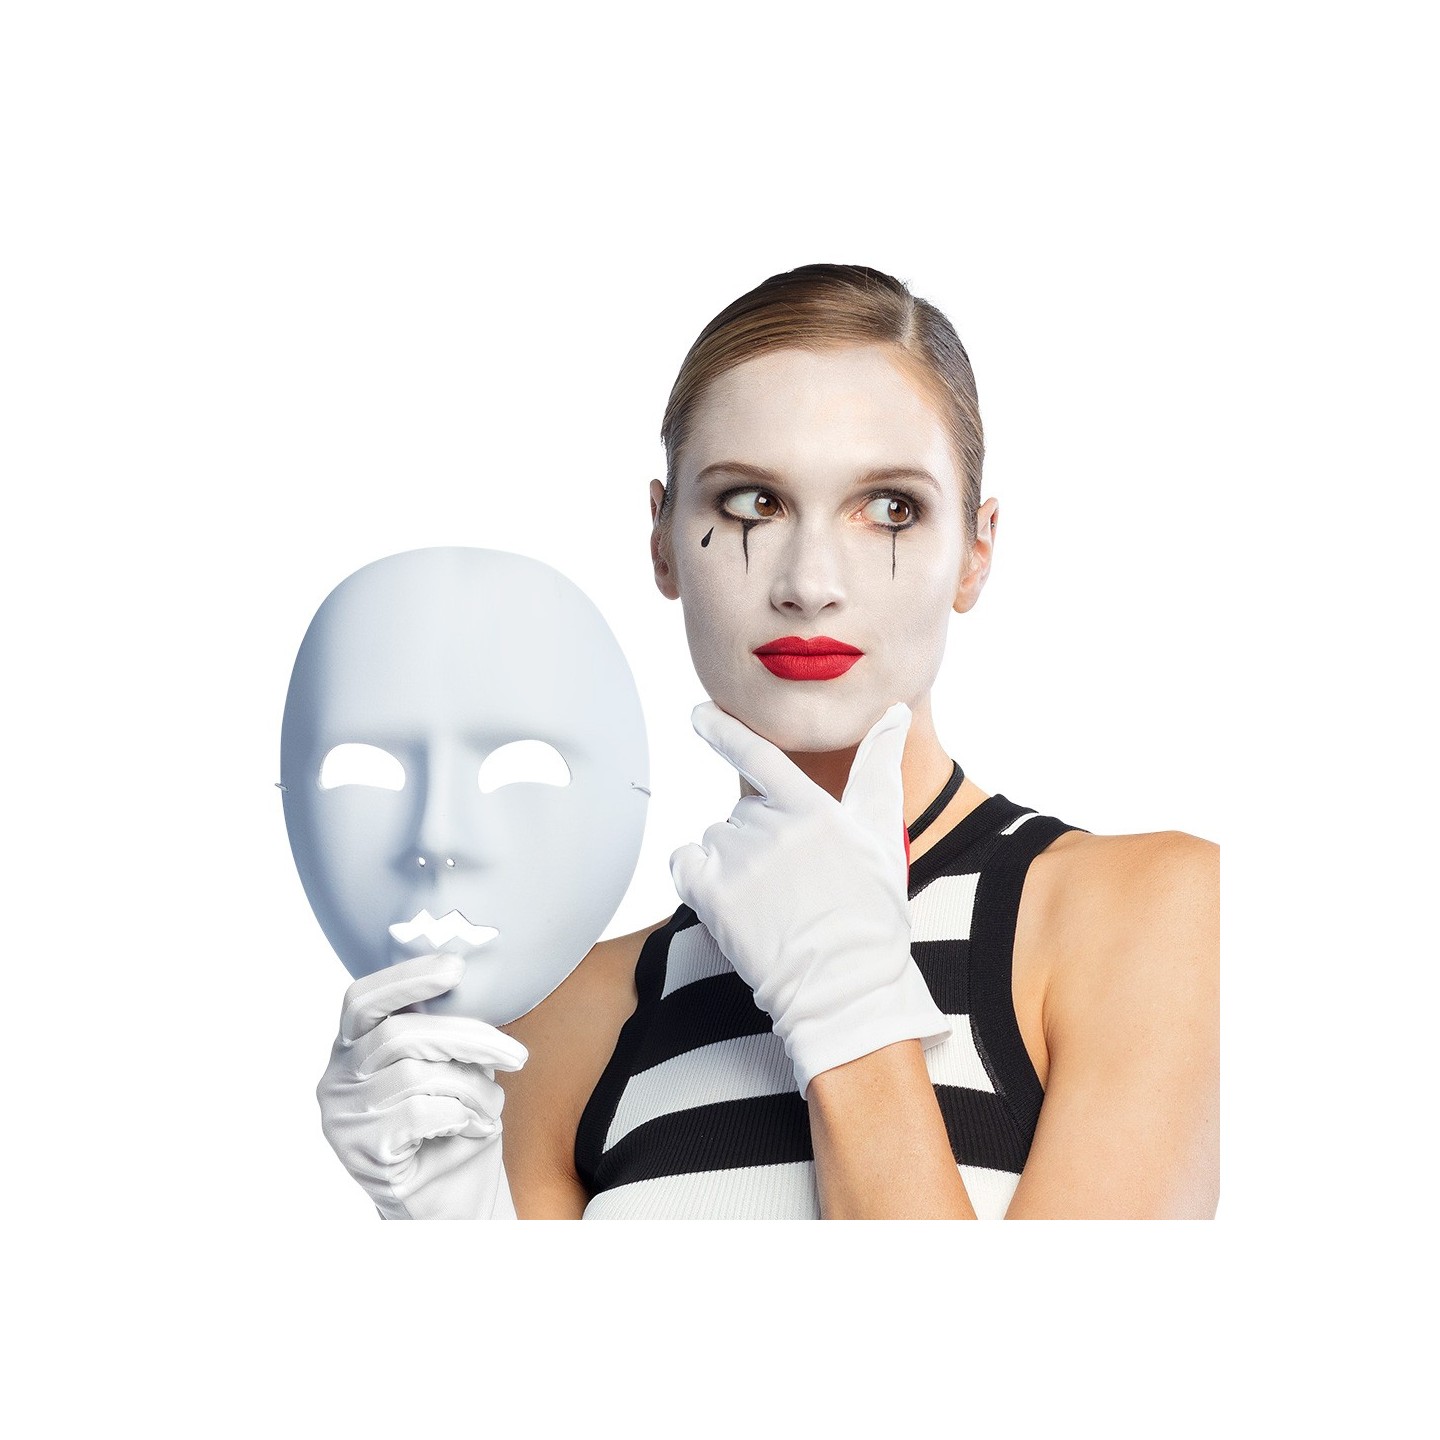 mime masker wit carnavalsmasker